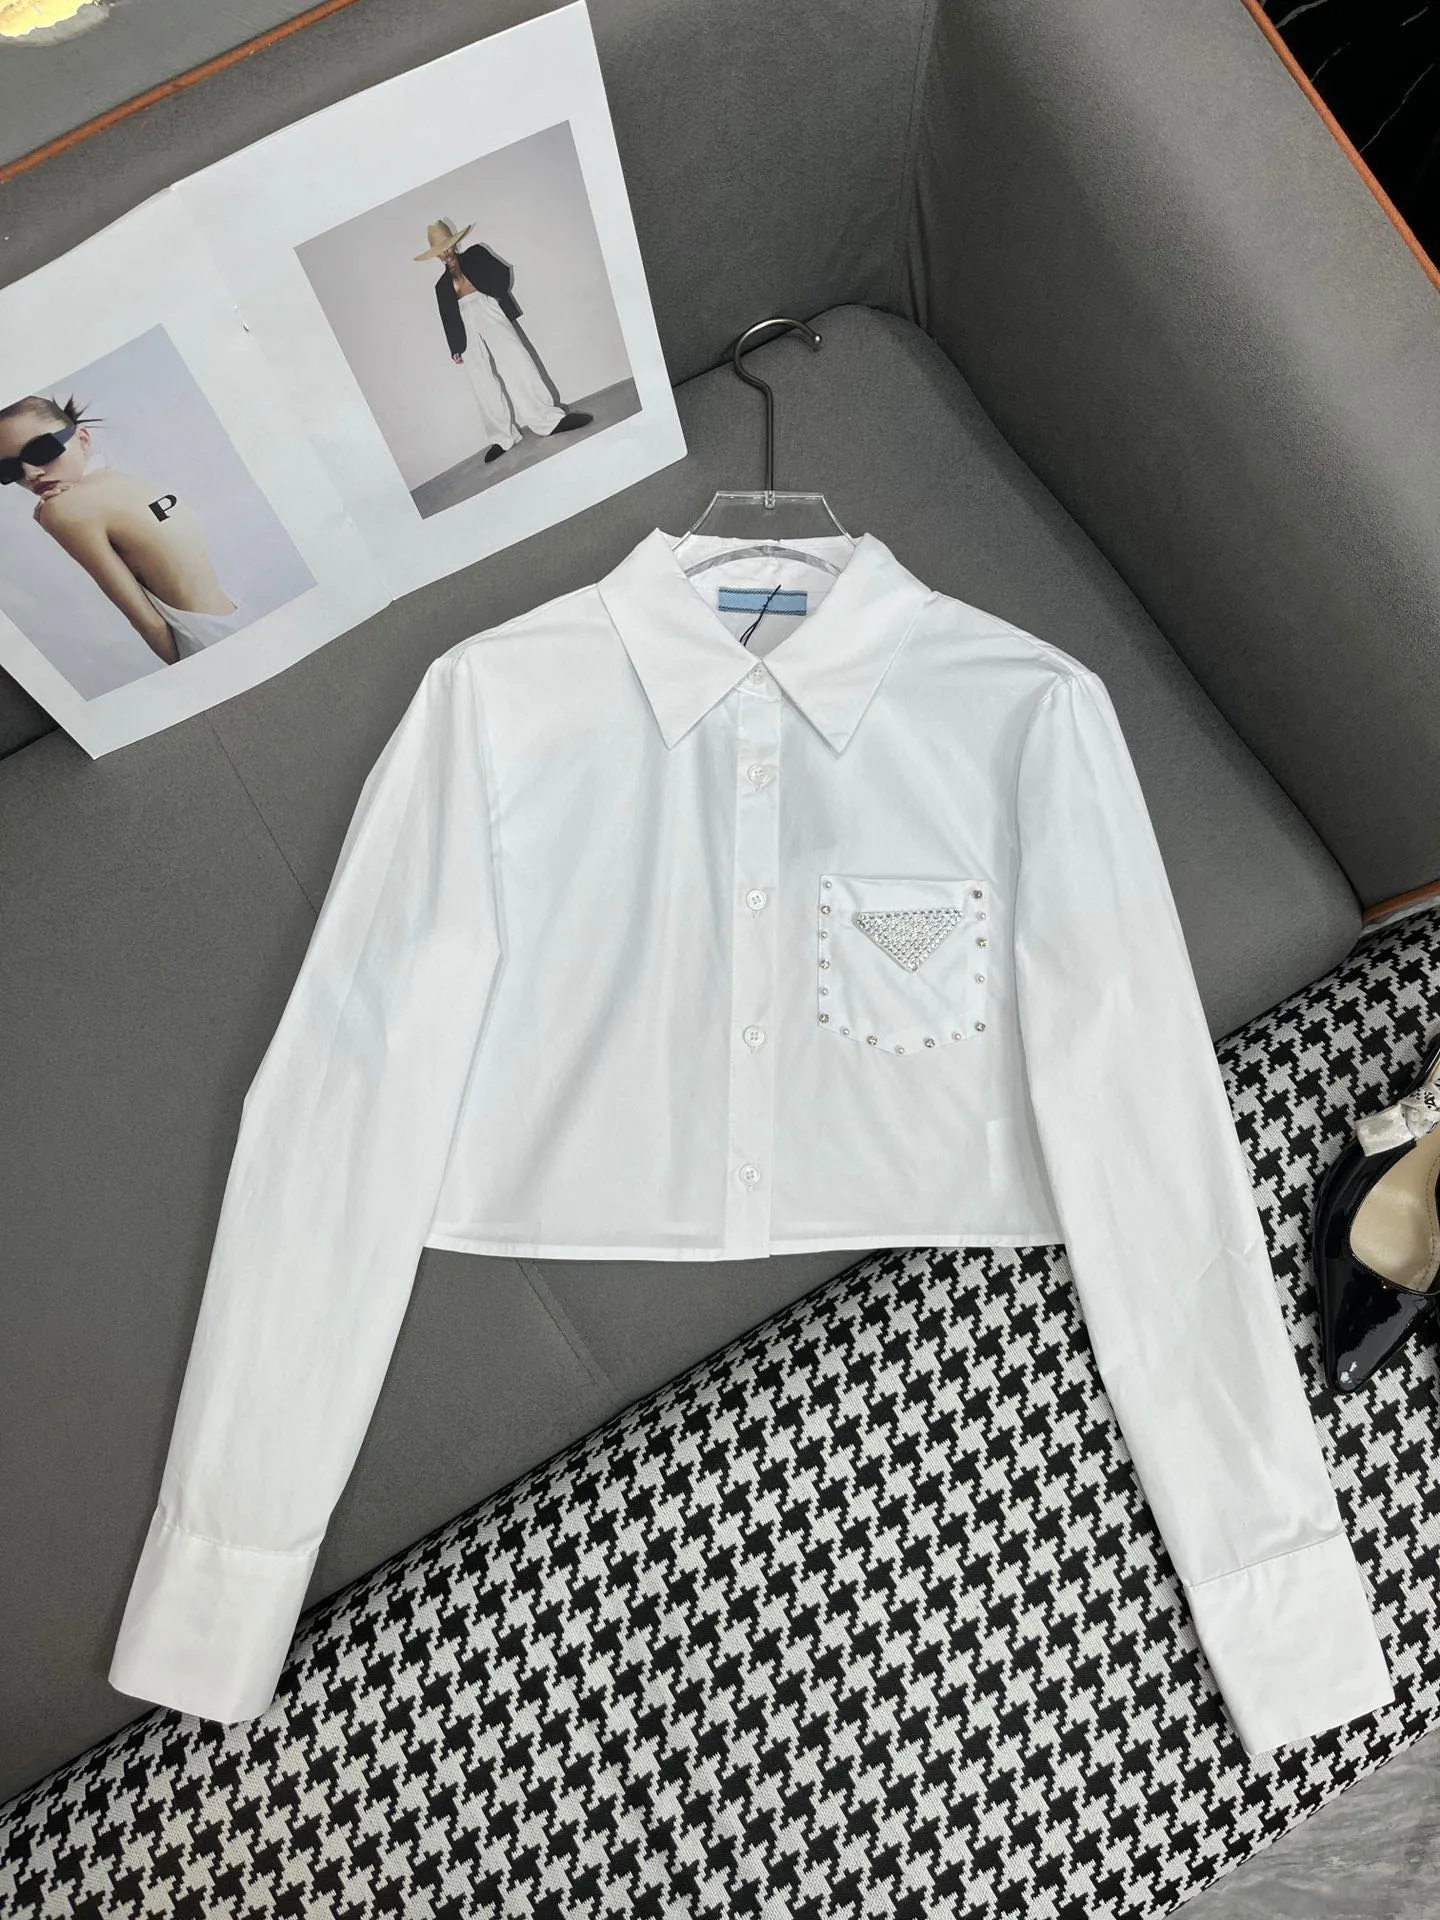 Hochwertiges, langärmliges weißes Hemd mit Sinn für Design und Pailletten-Knopfverzierungen für Damenhemden